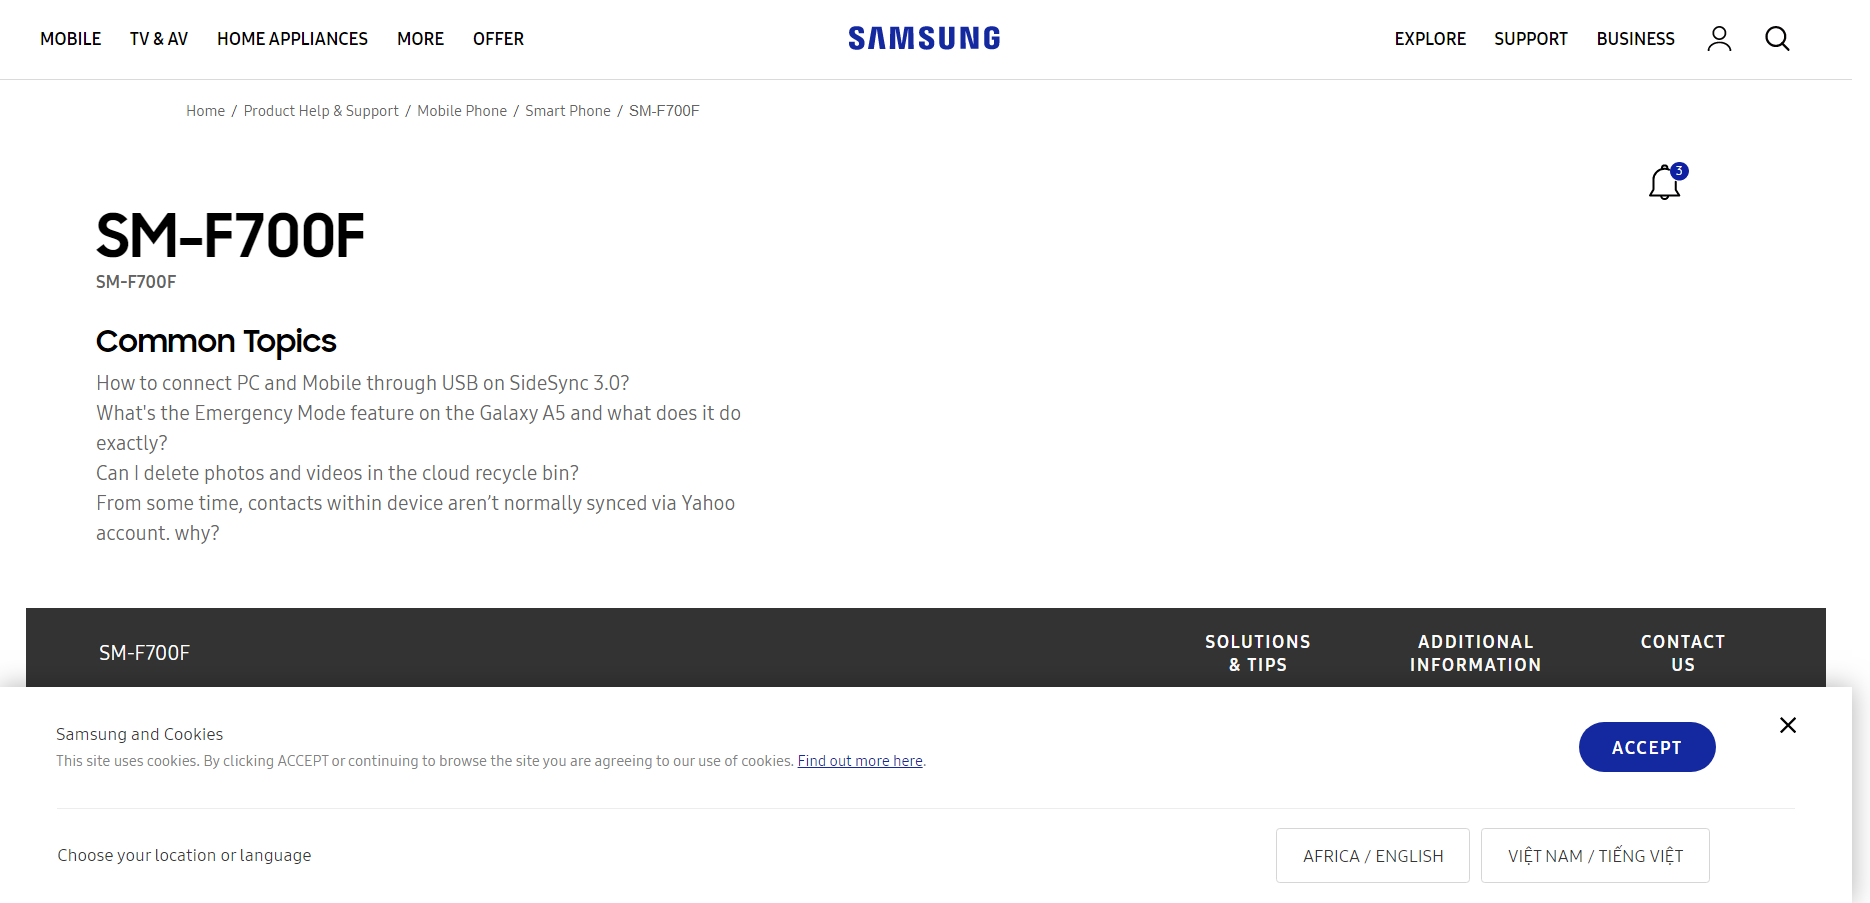 Samsung thêm trang hỗ trợ thiết bị màn hình gập trên website chính thức của mình